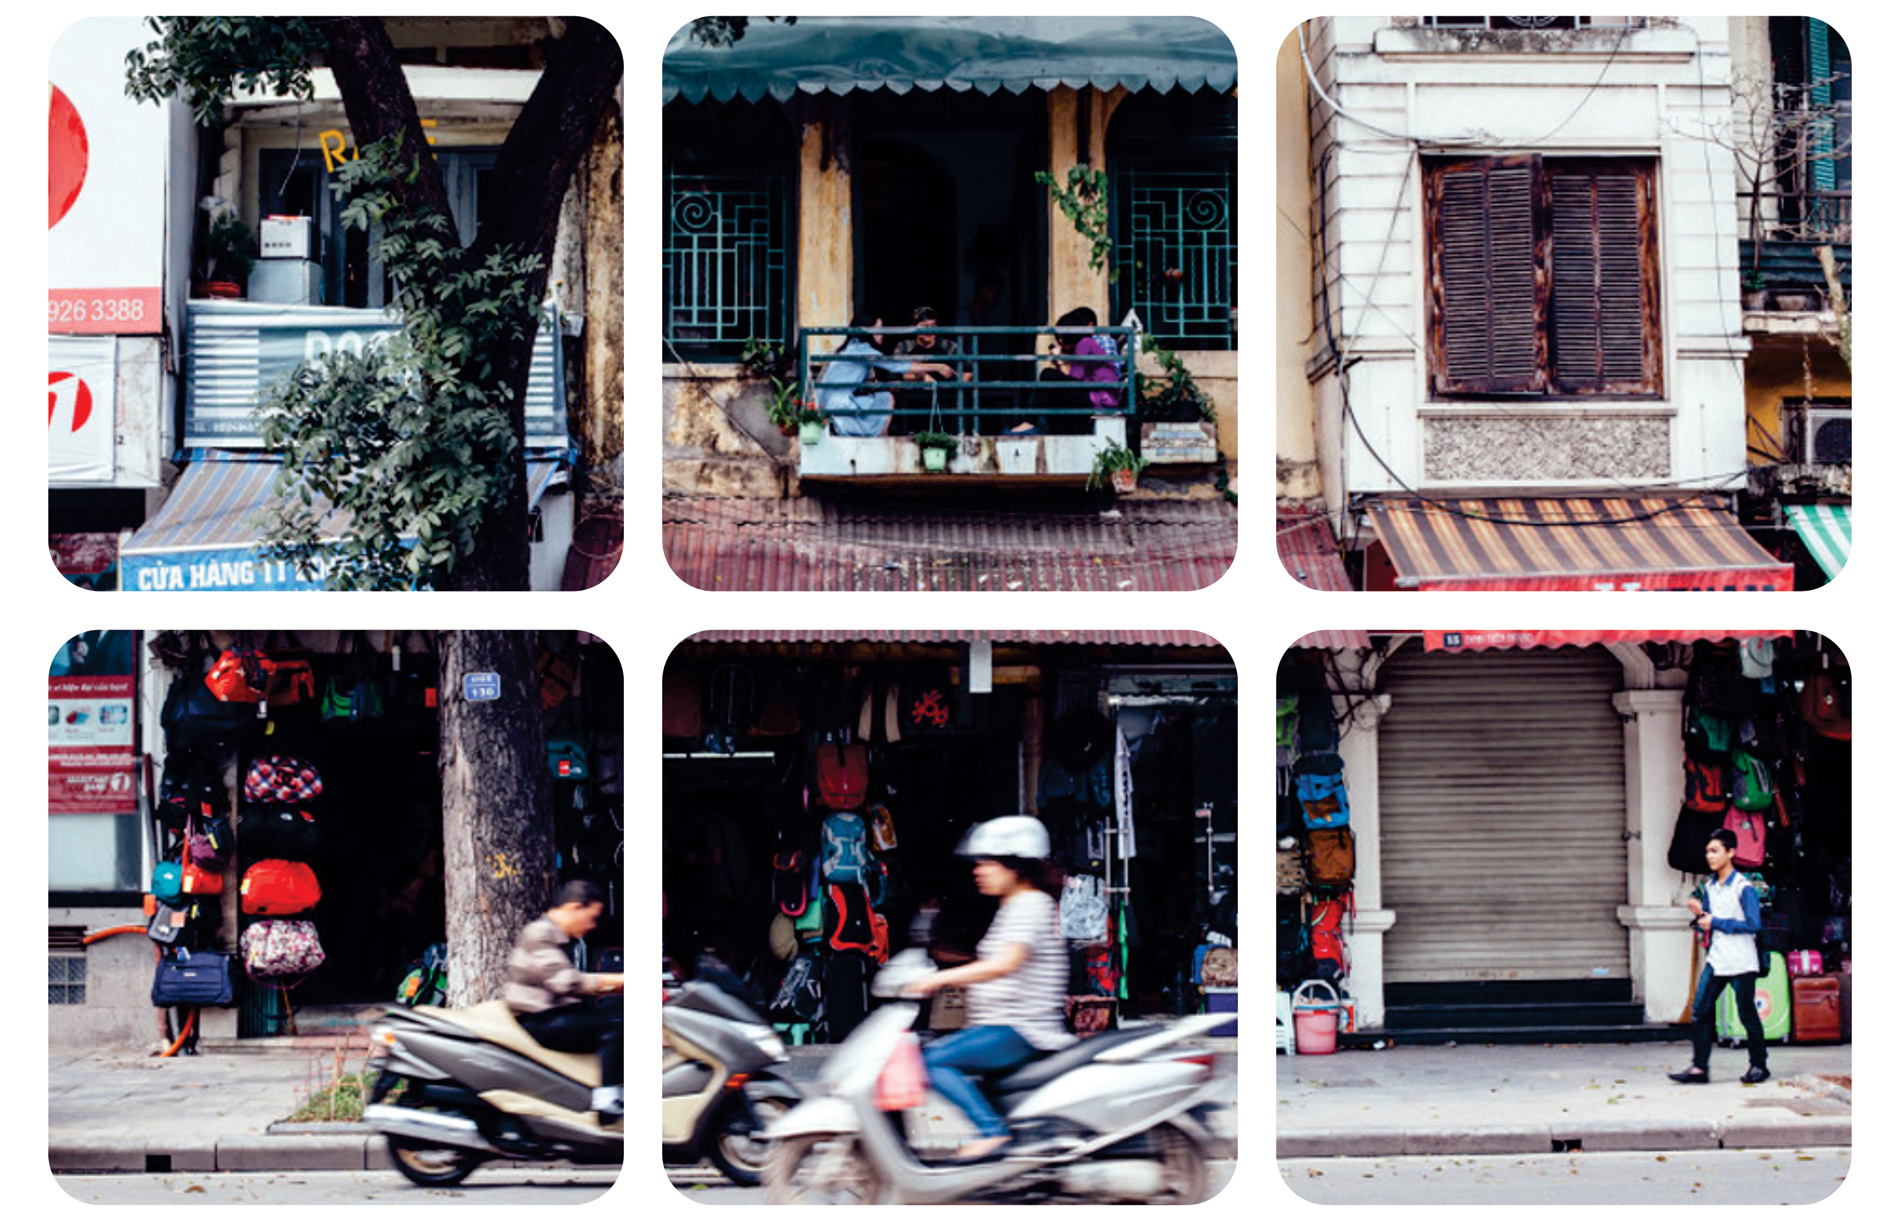 Văn hóa cà phê Việt Nam: Bức ảnh này sẽ đưa bạn đến với thế giới của văn hóa cà phê Việt Nam. Ảnh lấy cảm hứng từ những chợ đêm, những quán cà phê đường phố và những lá thư tay...cùng với hương vị cà phê đắng ngọt thấm đượm trong mỗi lỗ tai và chiếc ly đầy hương vị siêu ngon.